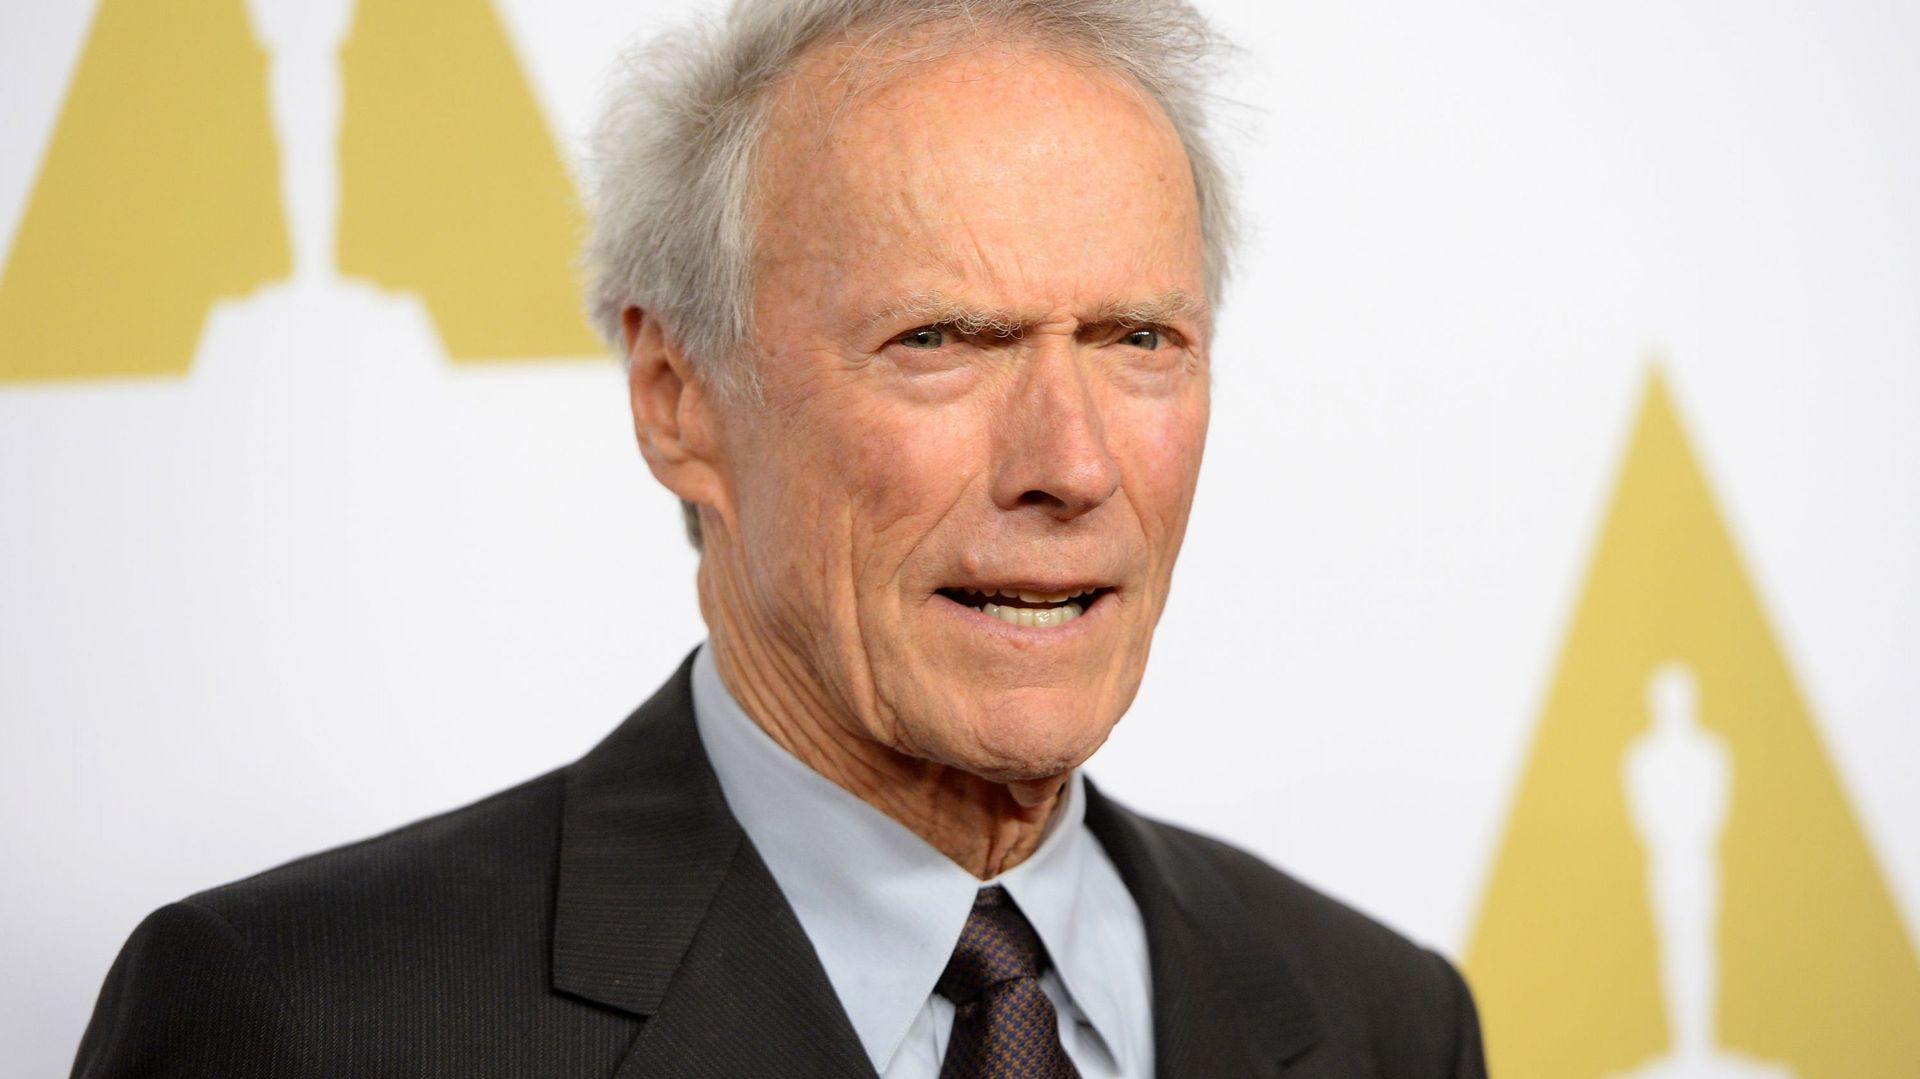 Le paradoxe Clint Eastwood : il réalise des films engagés mais vote Trump !